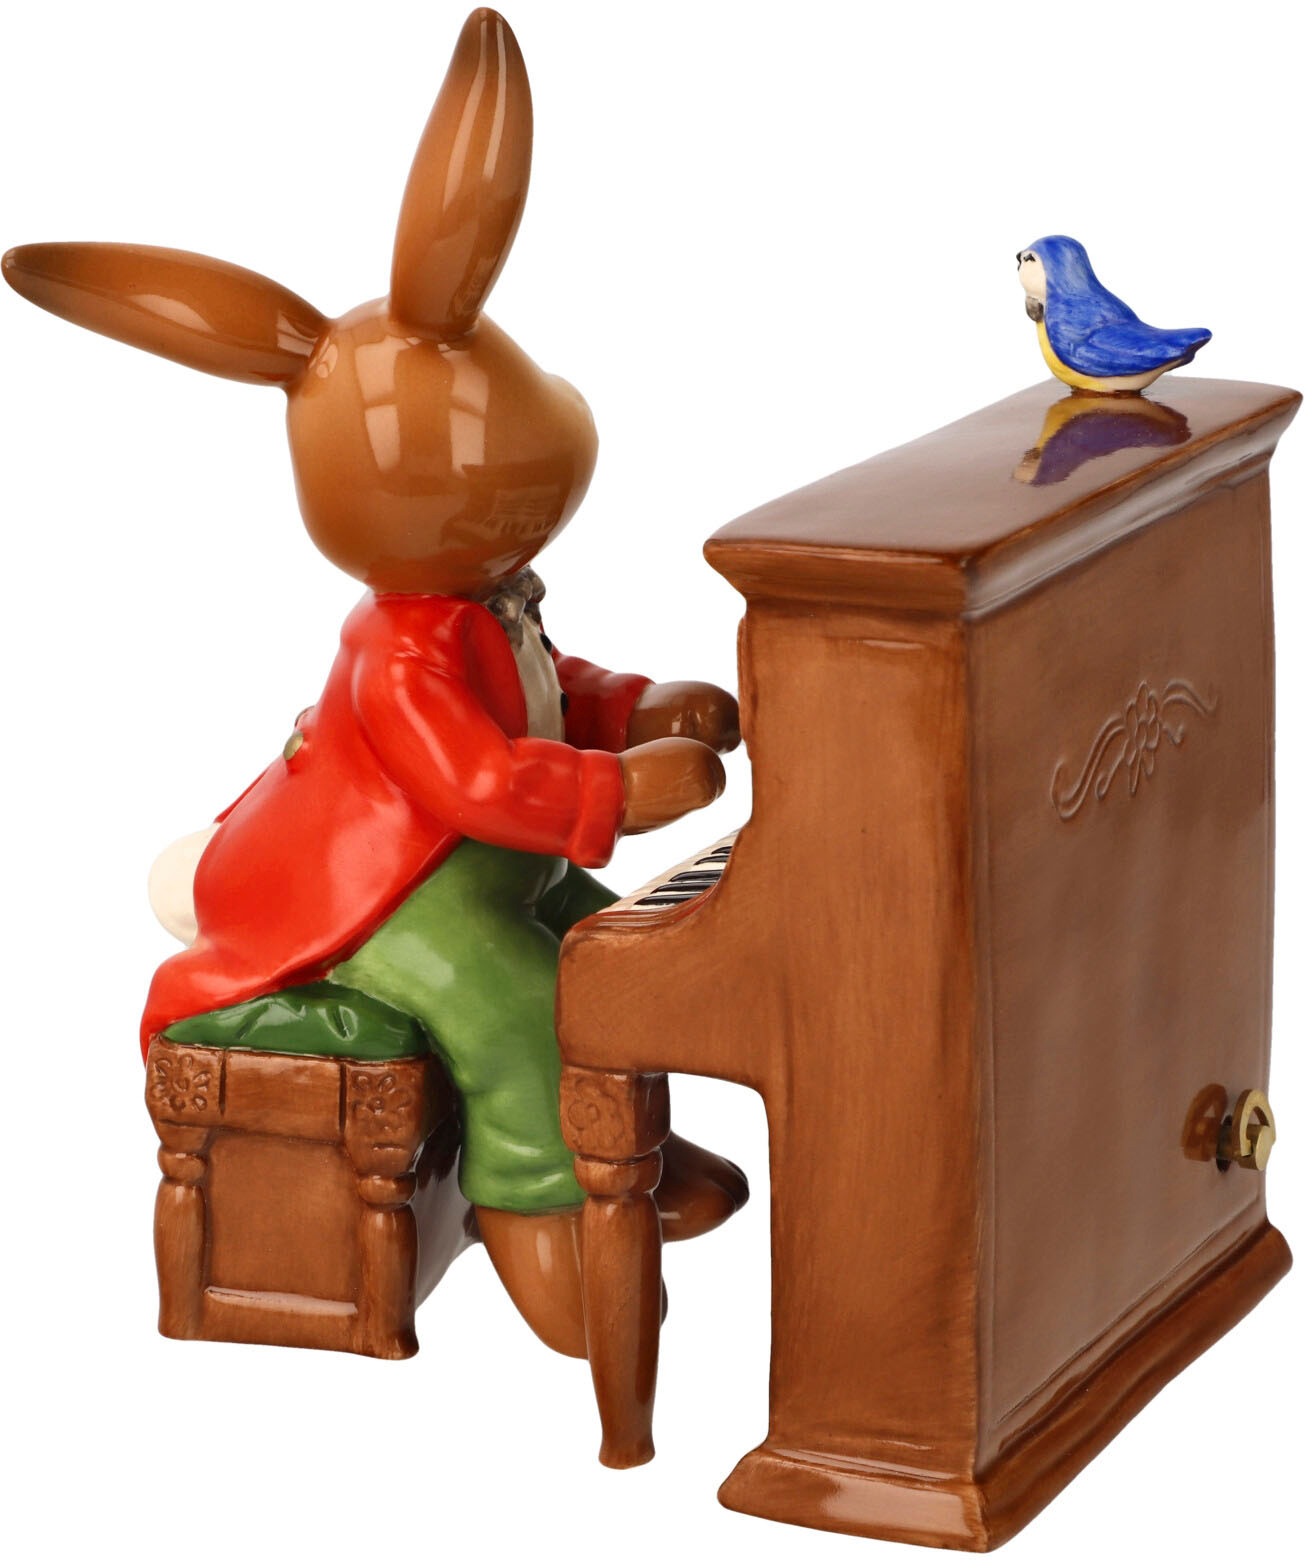 Goebel Spieluhr »Musik liegt in der Luft«, (1 tlg.), Hase mit Klavier, Sammelfigur zum Aufziehen, Ostern, Frühling